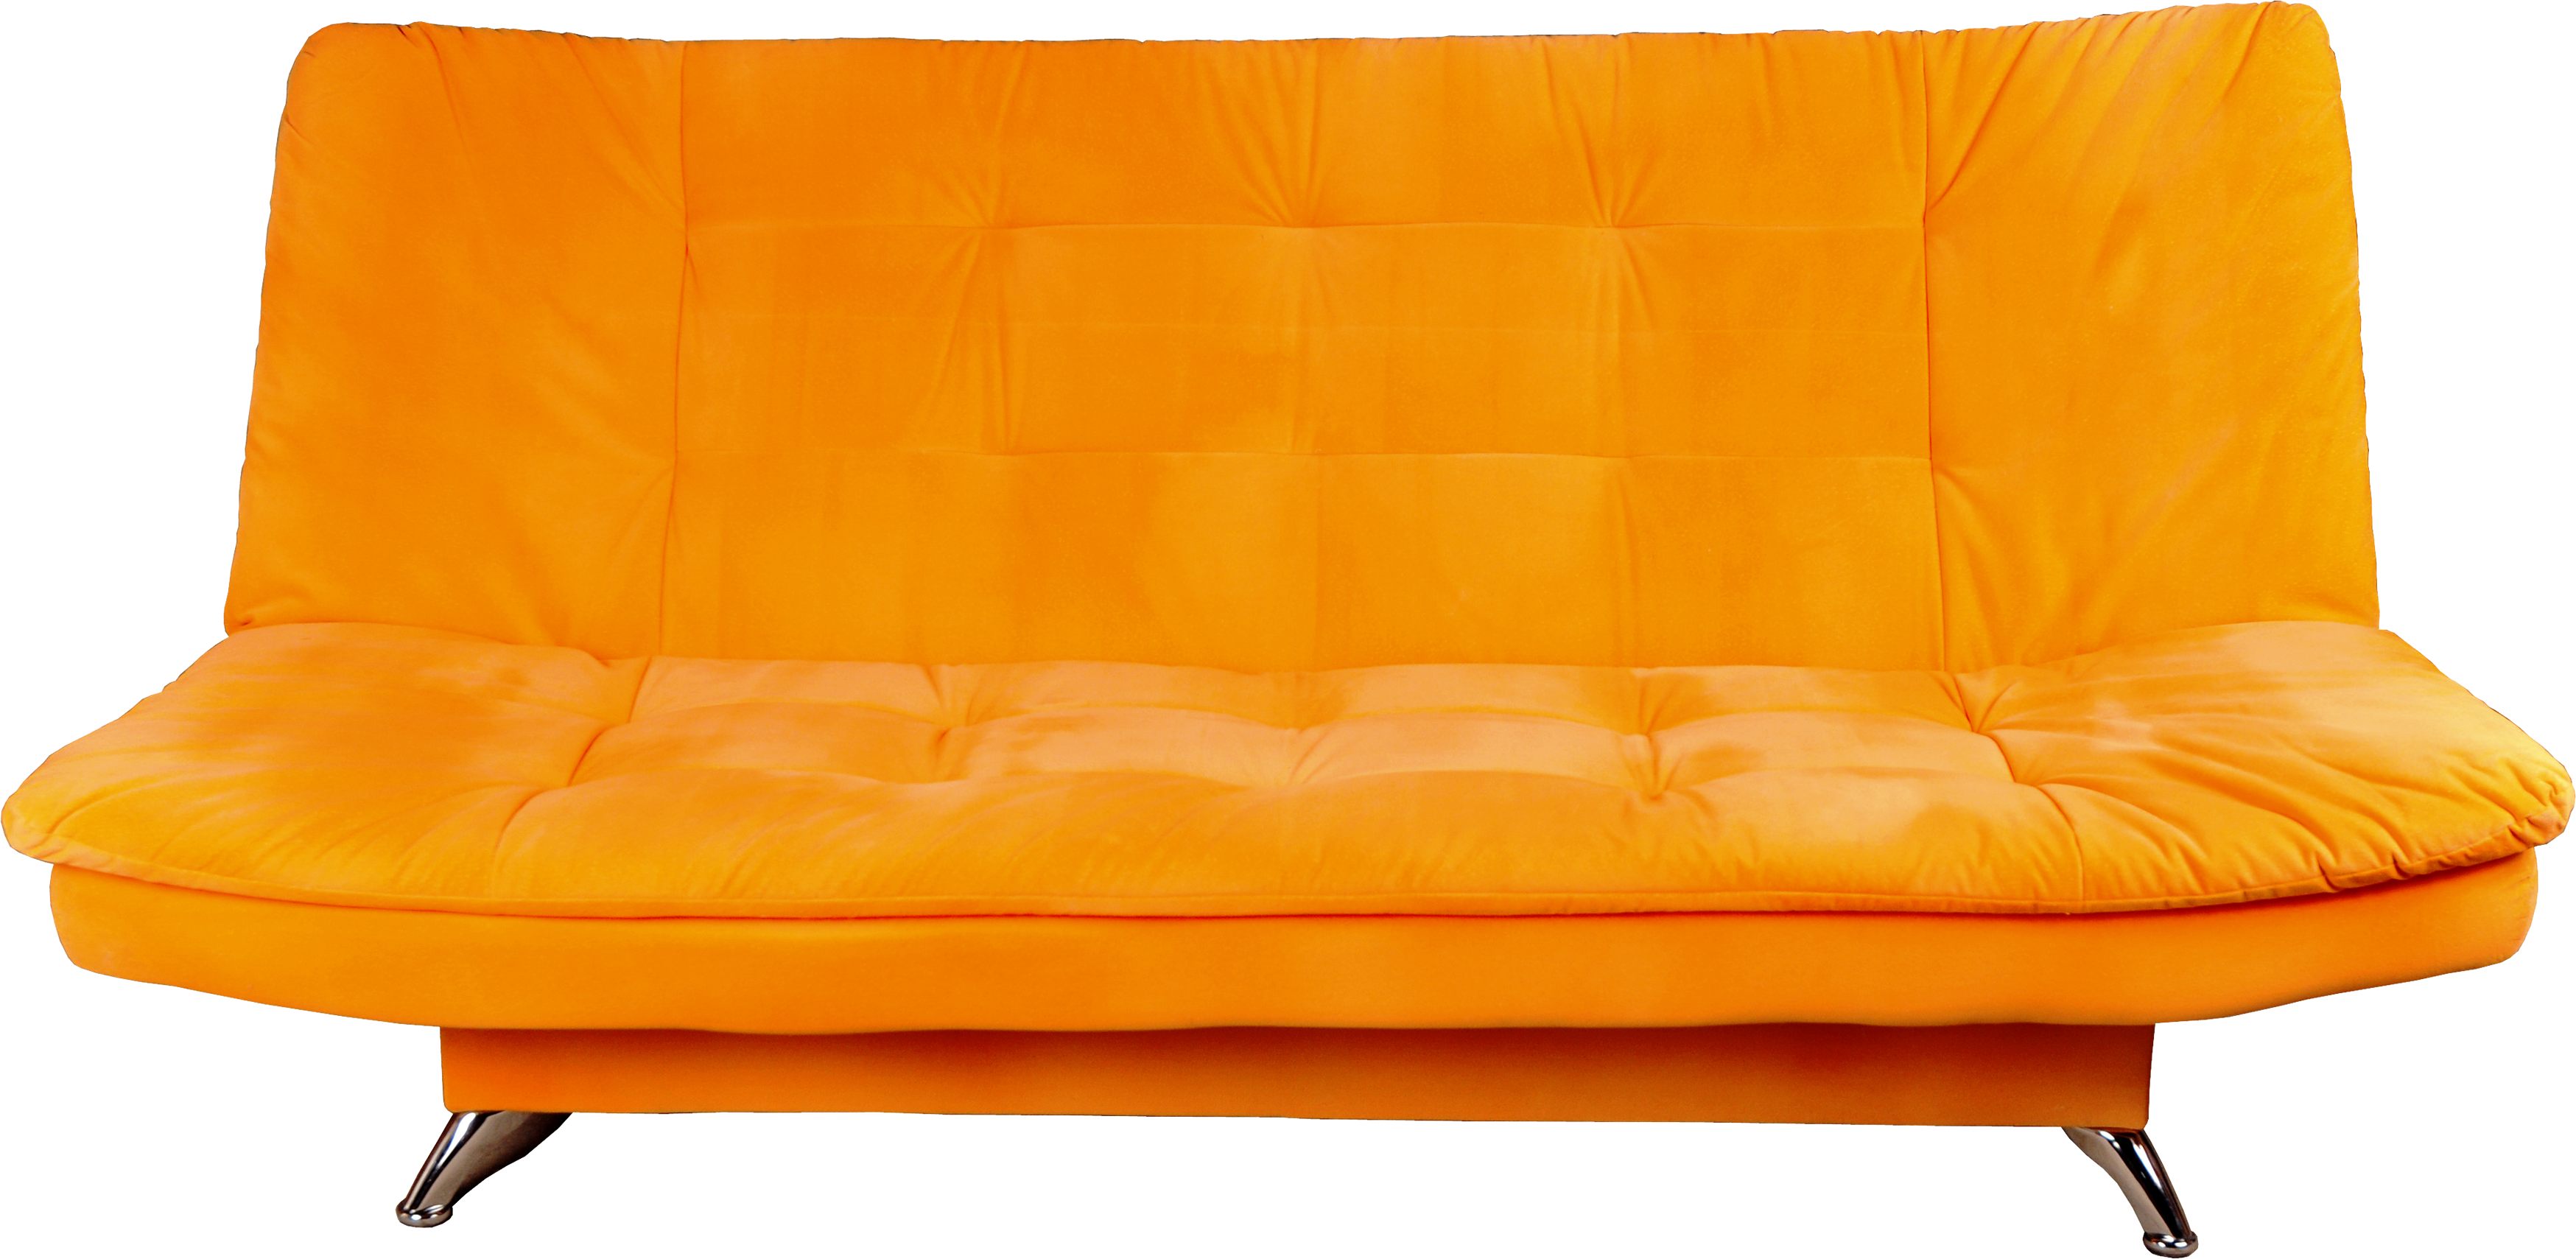 Orange sofa PNG image